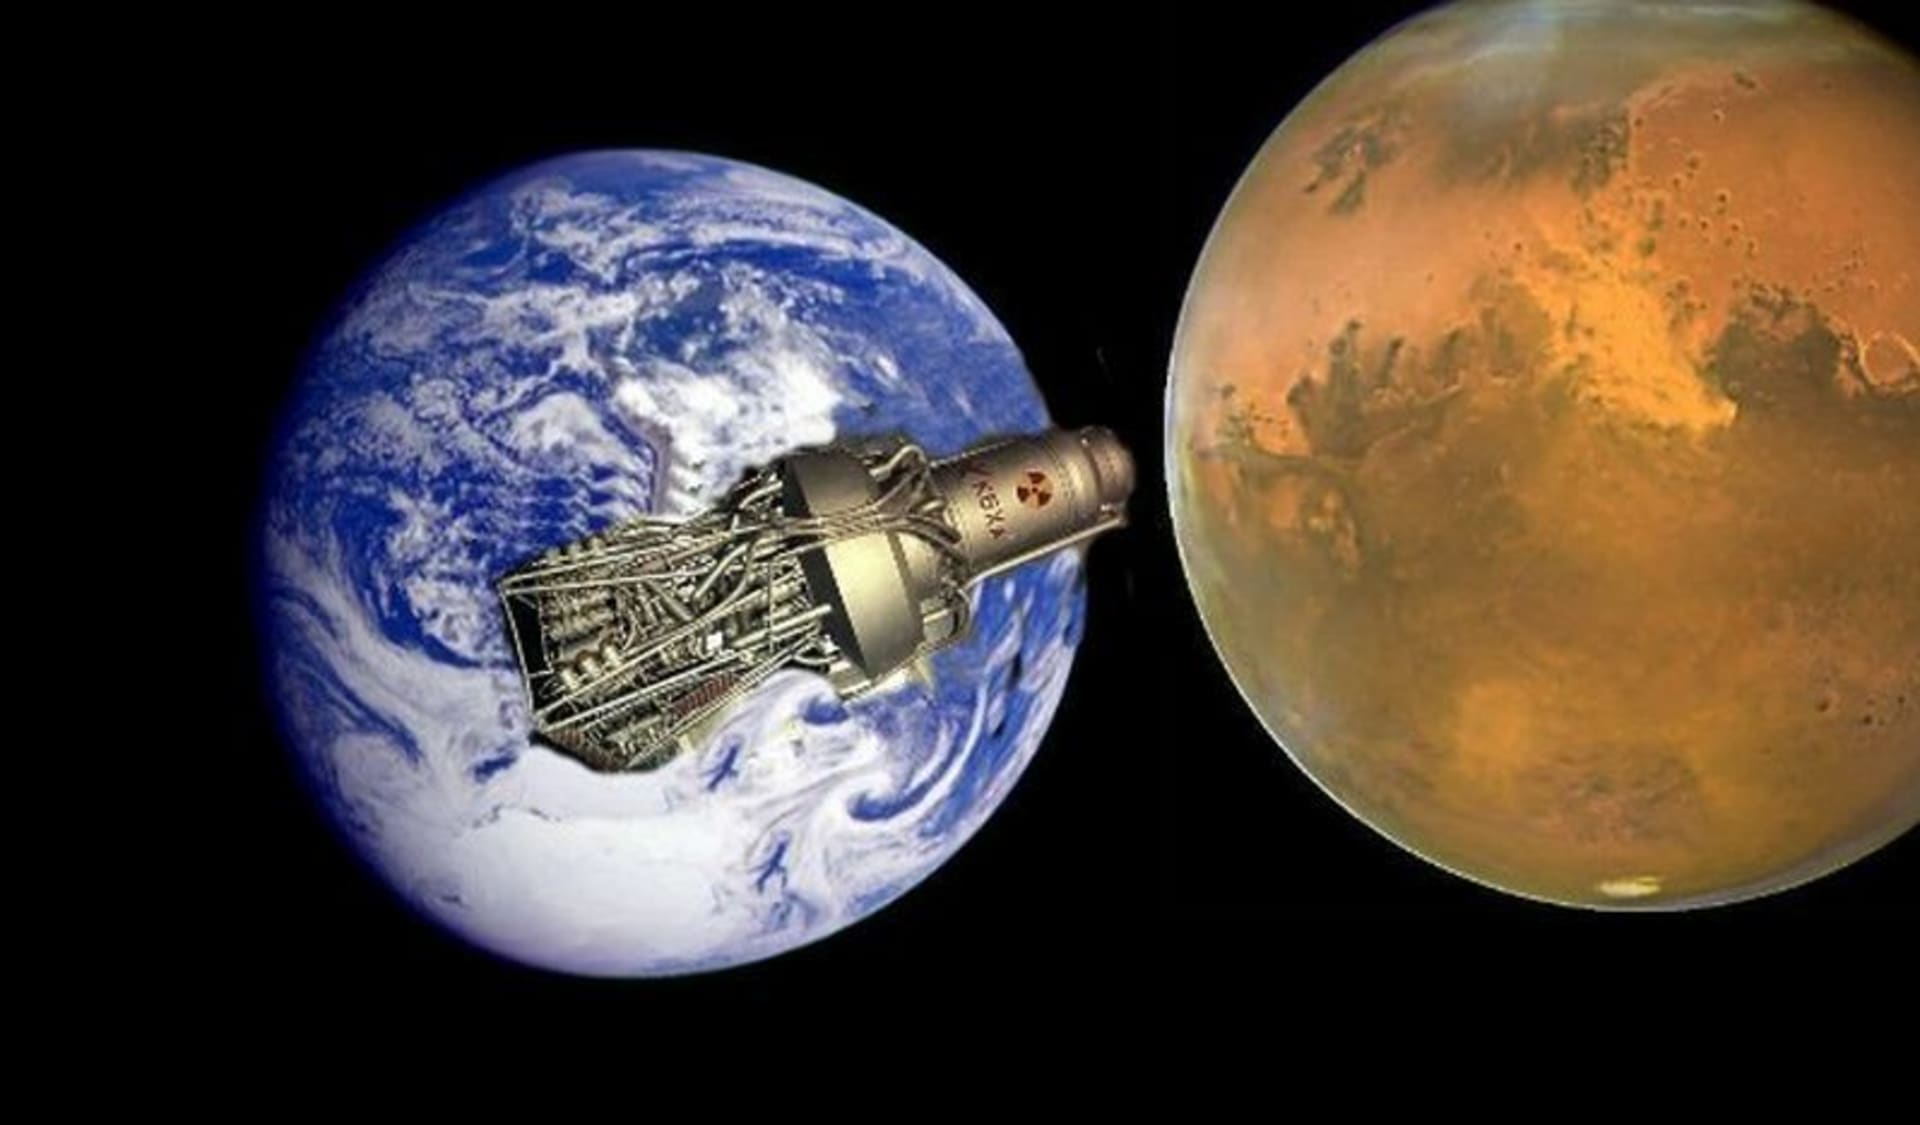 Je cesta na Mars pro člověka úplně nemožná? Astronautům se do cesty staví další hrozba...